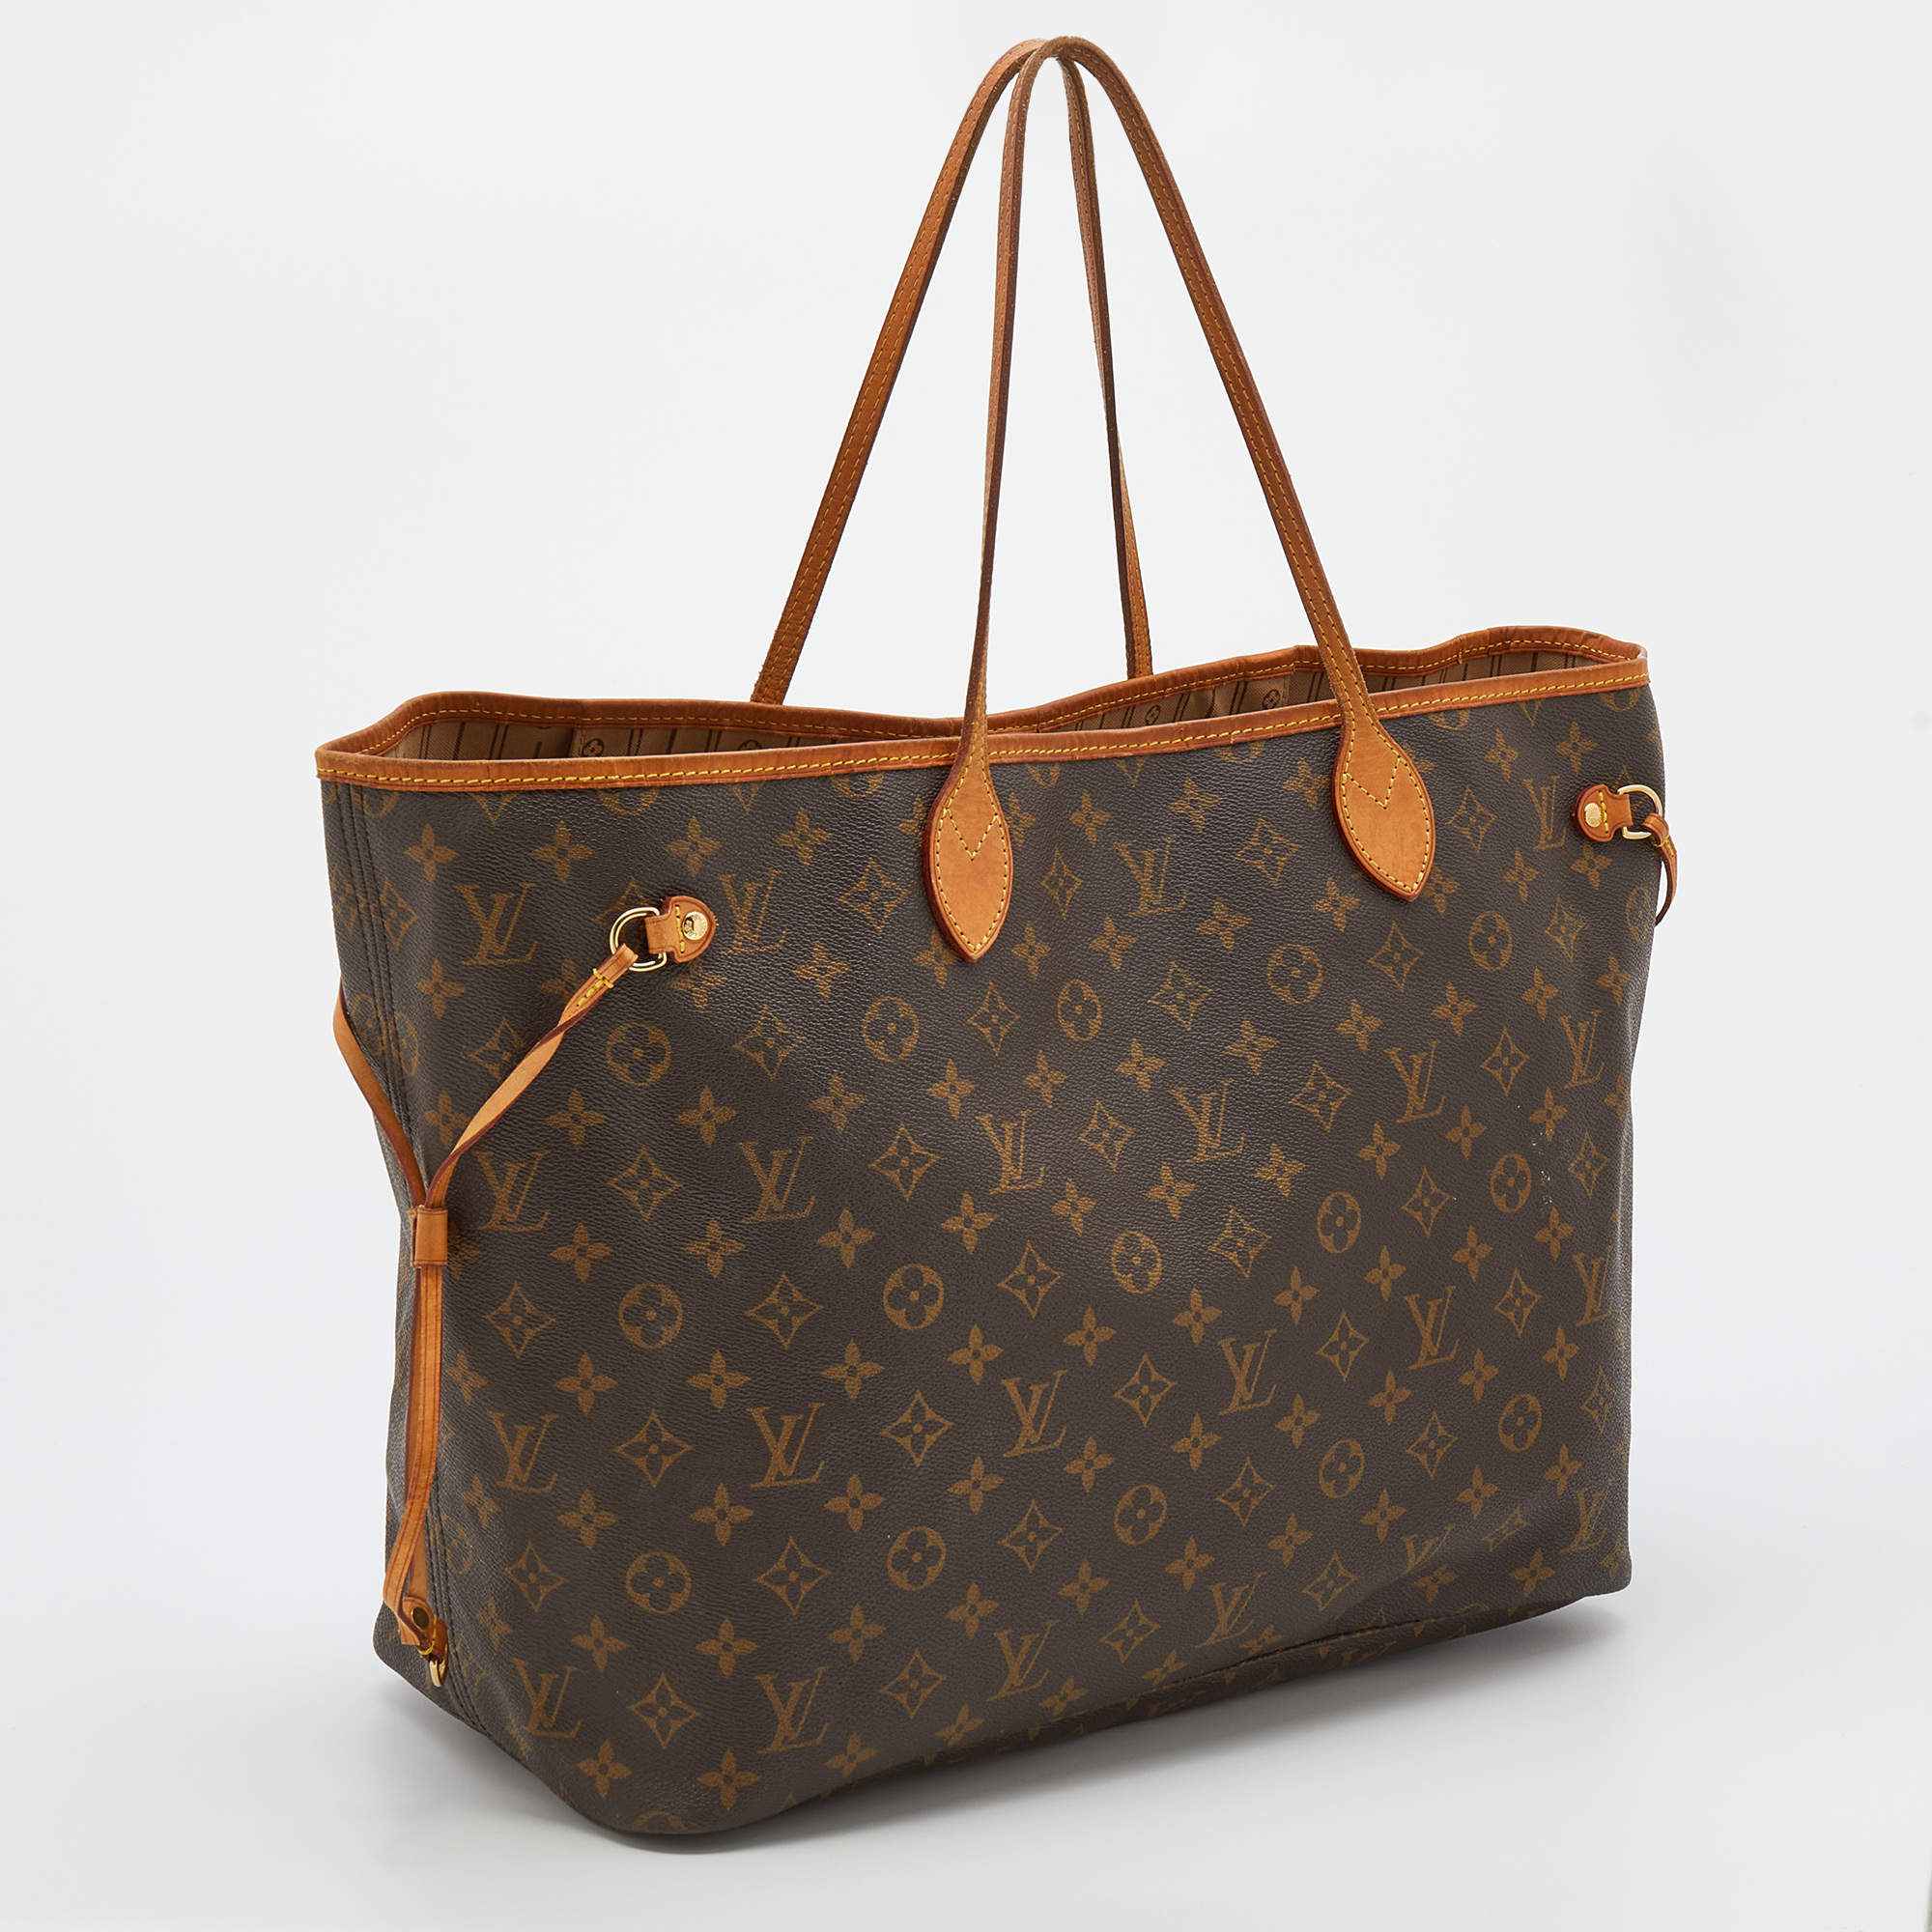 Neverfull GM bag by Louis V. Handbag, women's bag, luxury bag